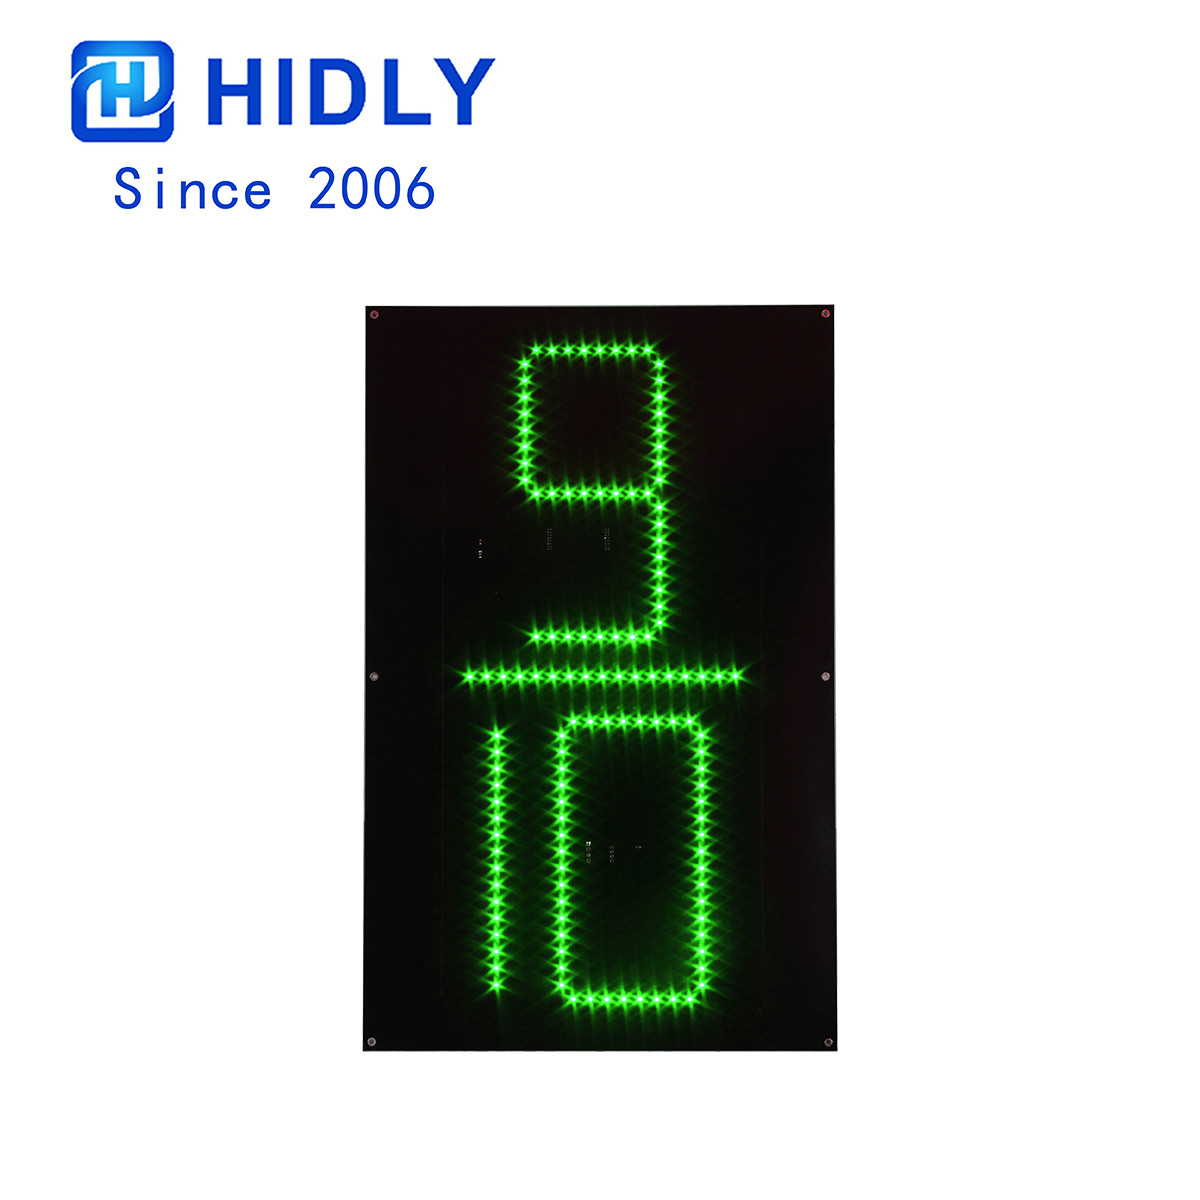 24 Inch Green 9/10 LED Digital Board